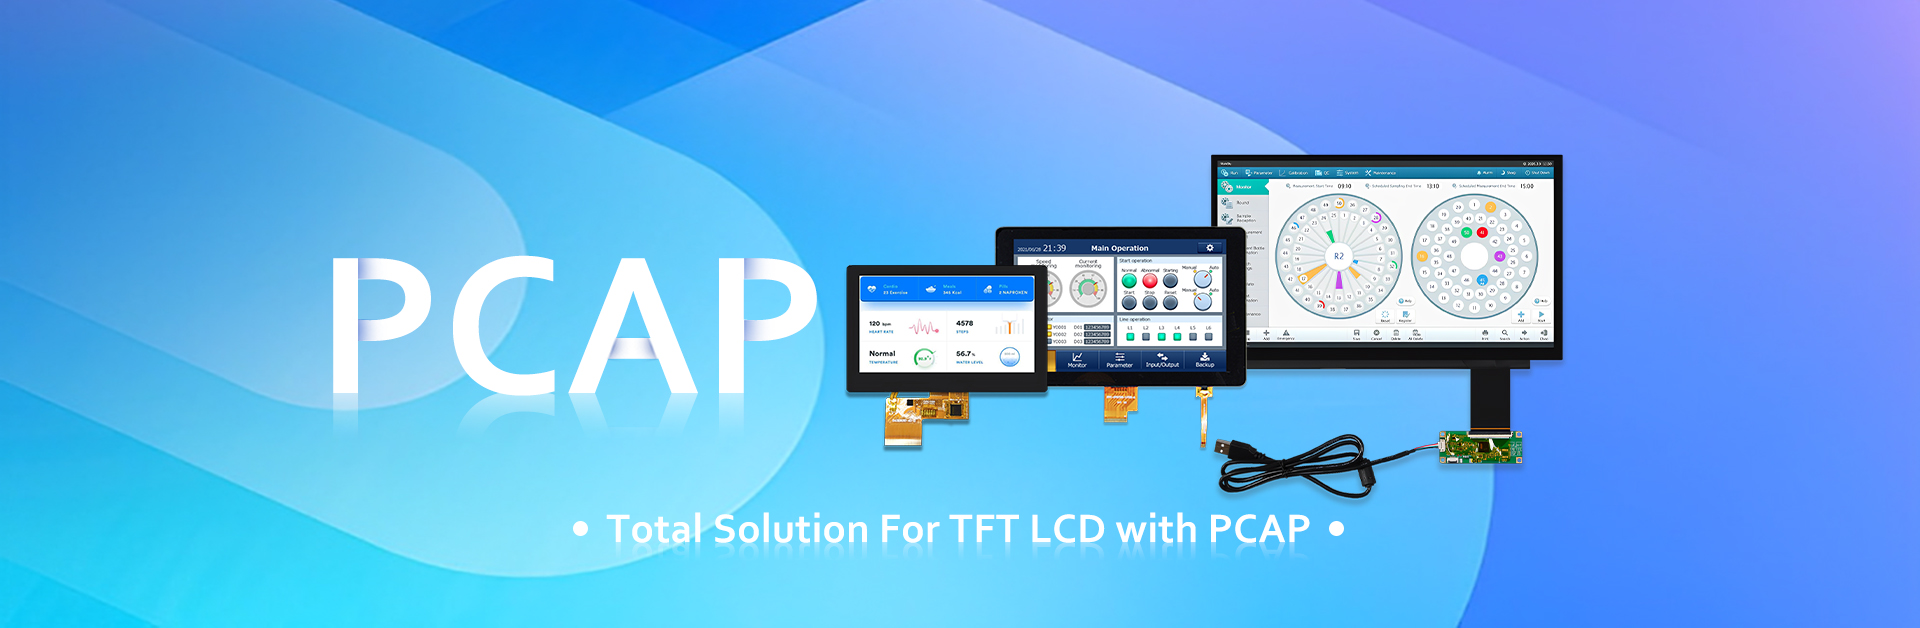 Gesamtlösung für TFT LCD mit PCAP